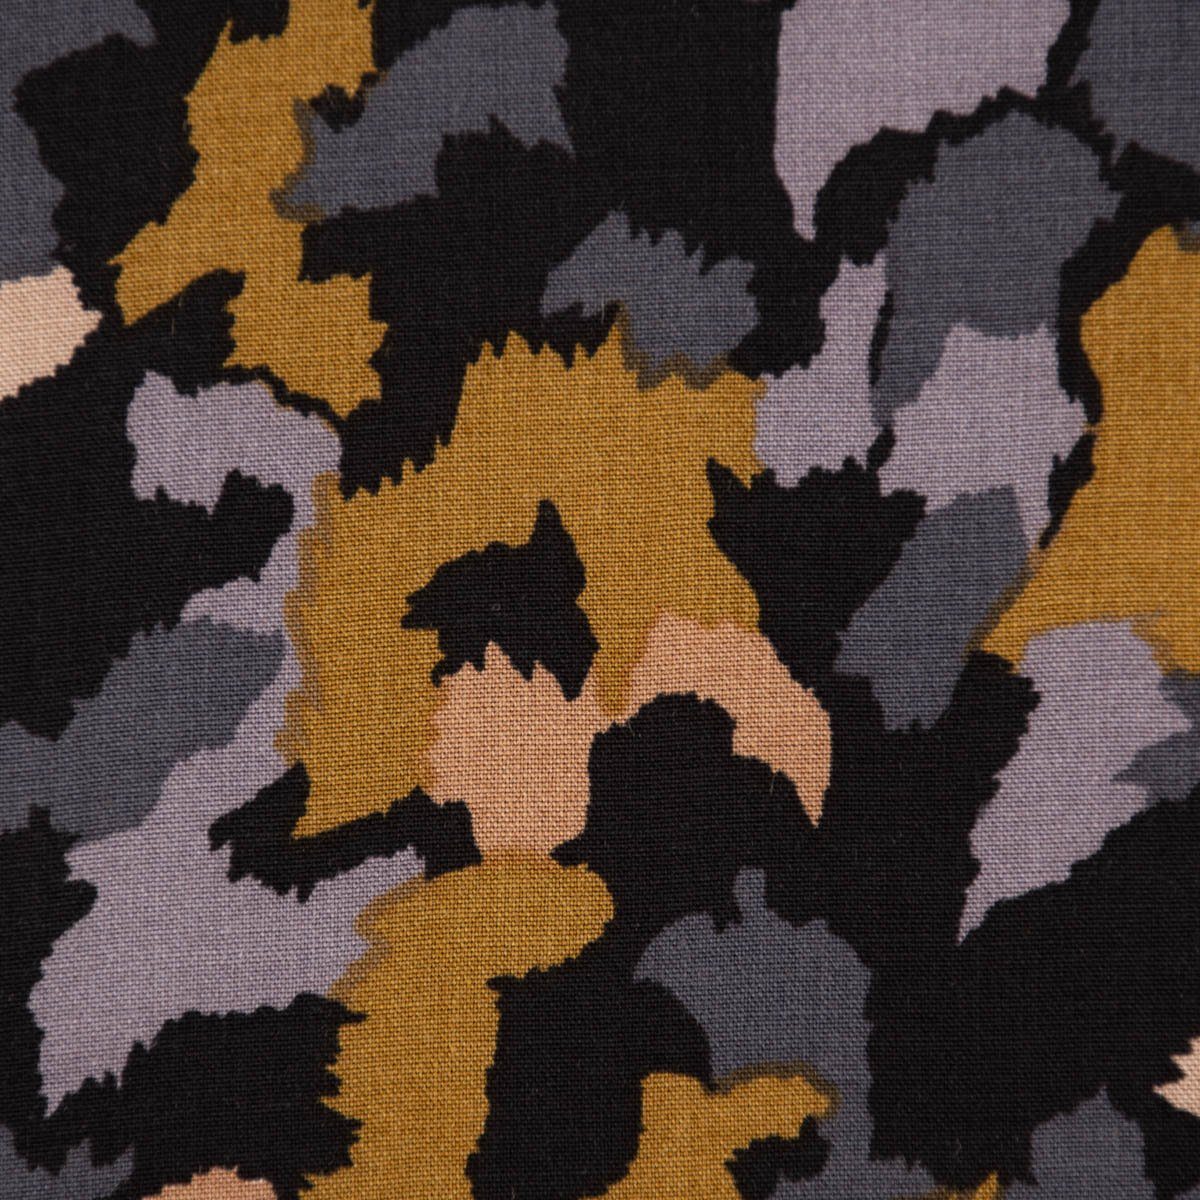 SCHÖNER LEBEN. Stoff »Bekleidungsstoff Radiance Viskose Camouflage  Tarnmuster schwarz oliv dunkelgrau 1,4m Breite« online kaufen | OTTO